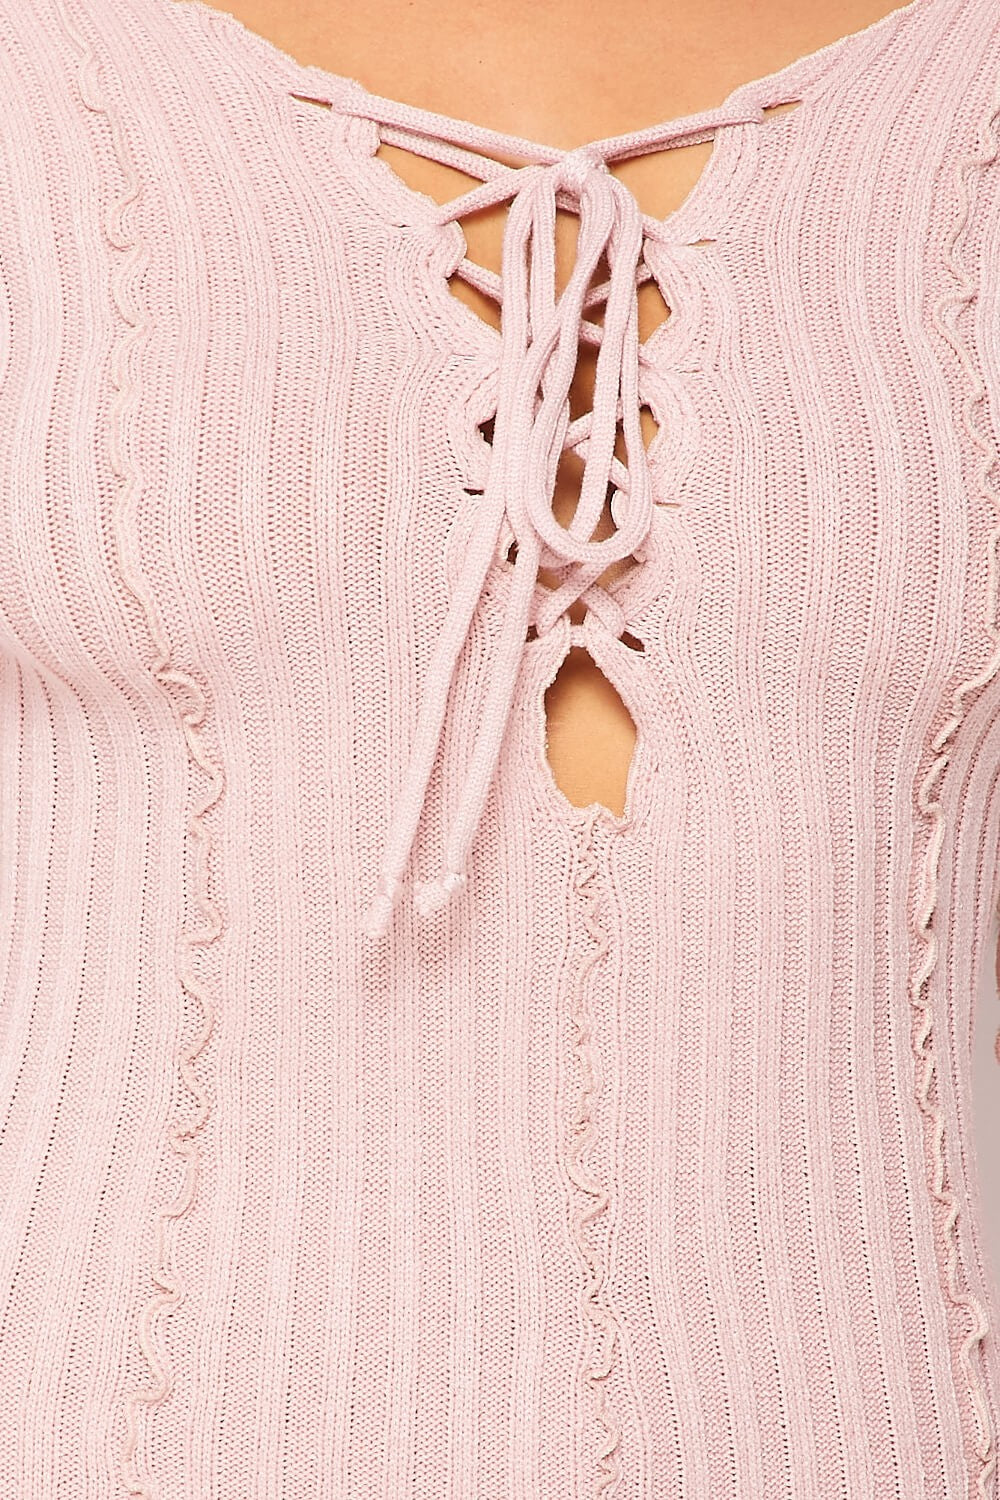 Pretty Details Lace-Up Neckline Dress